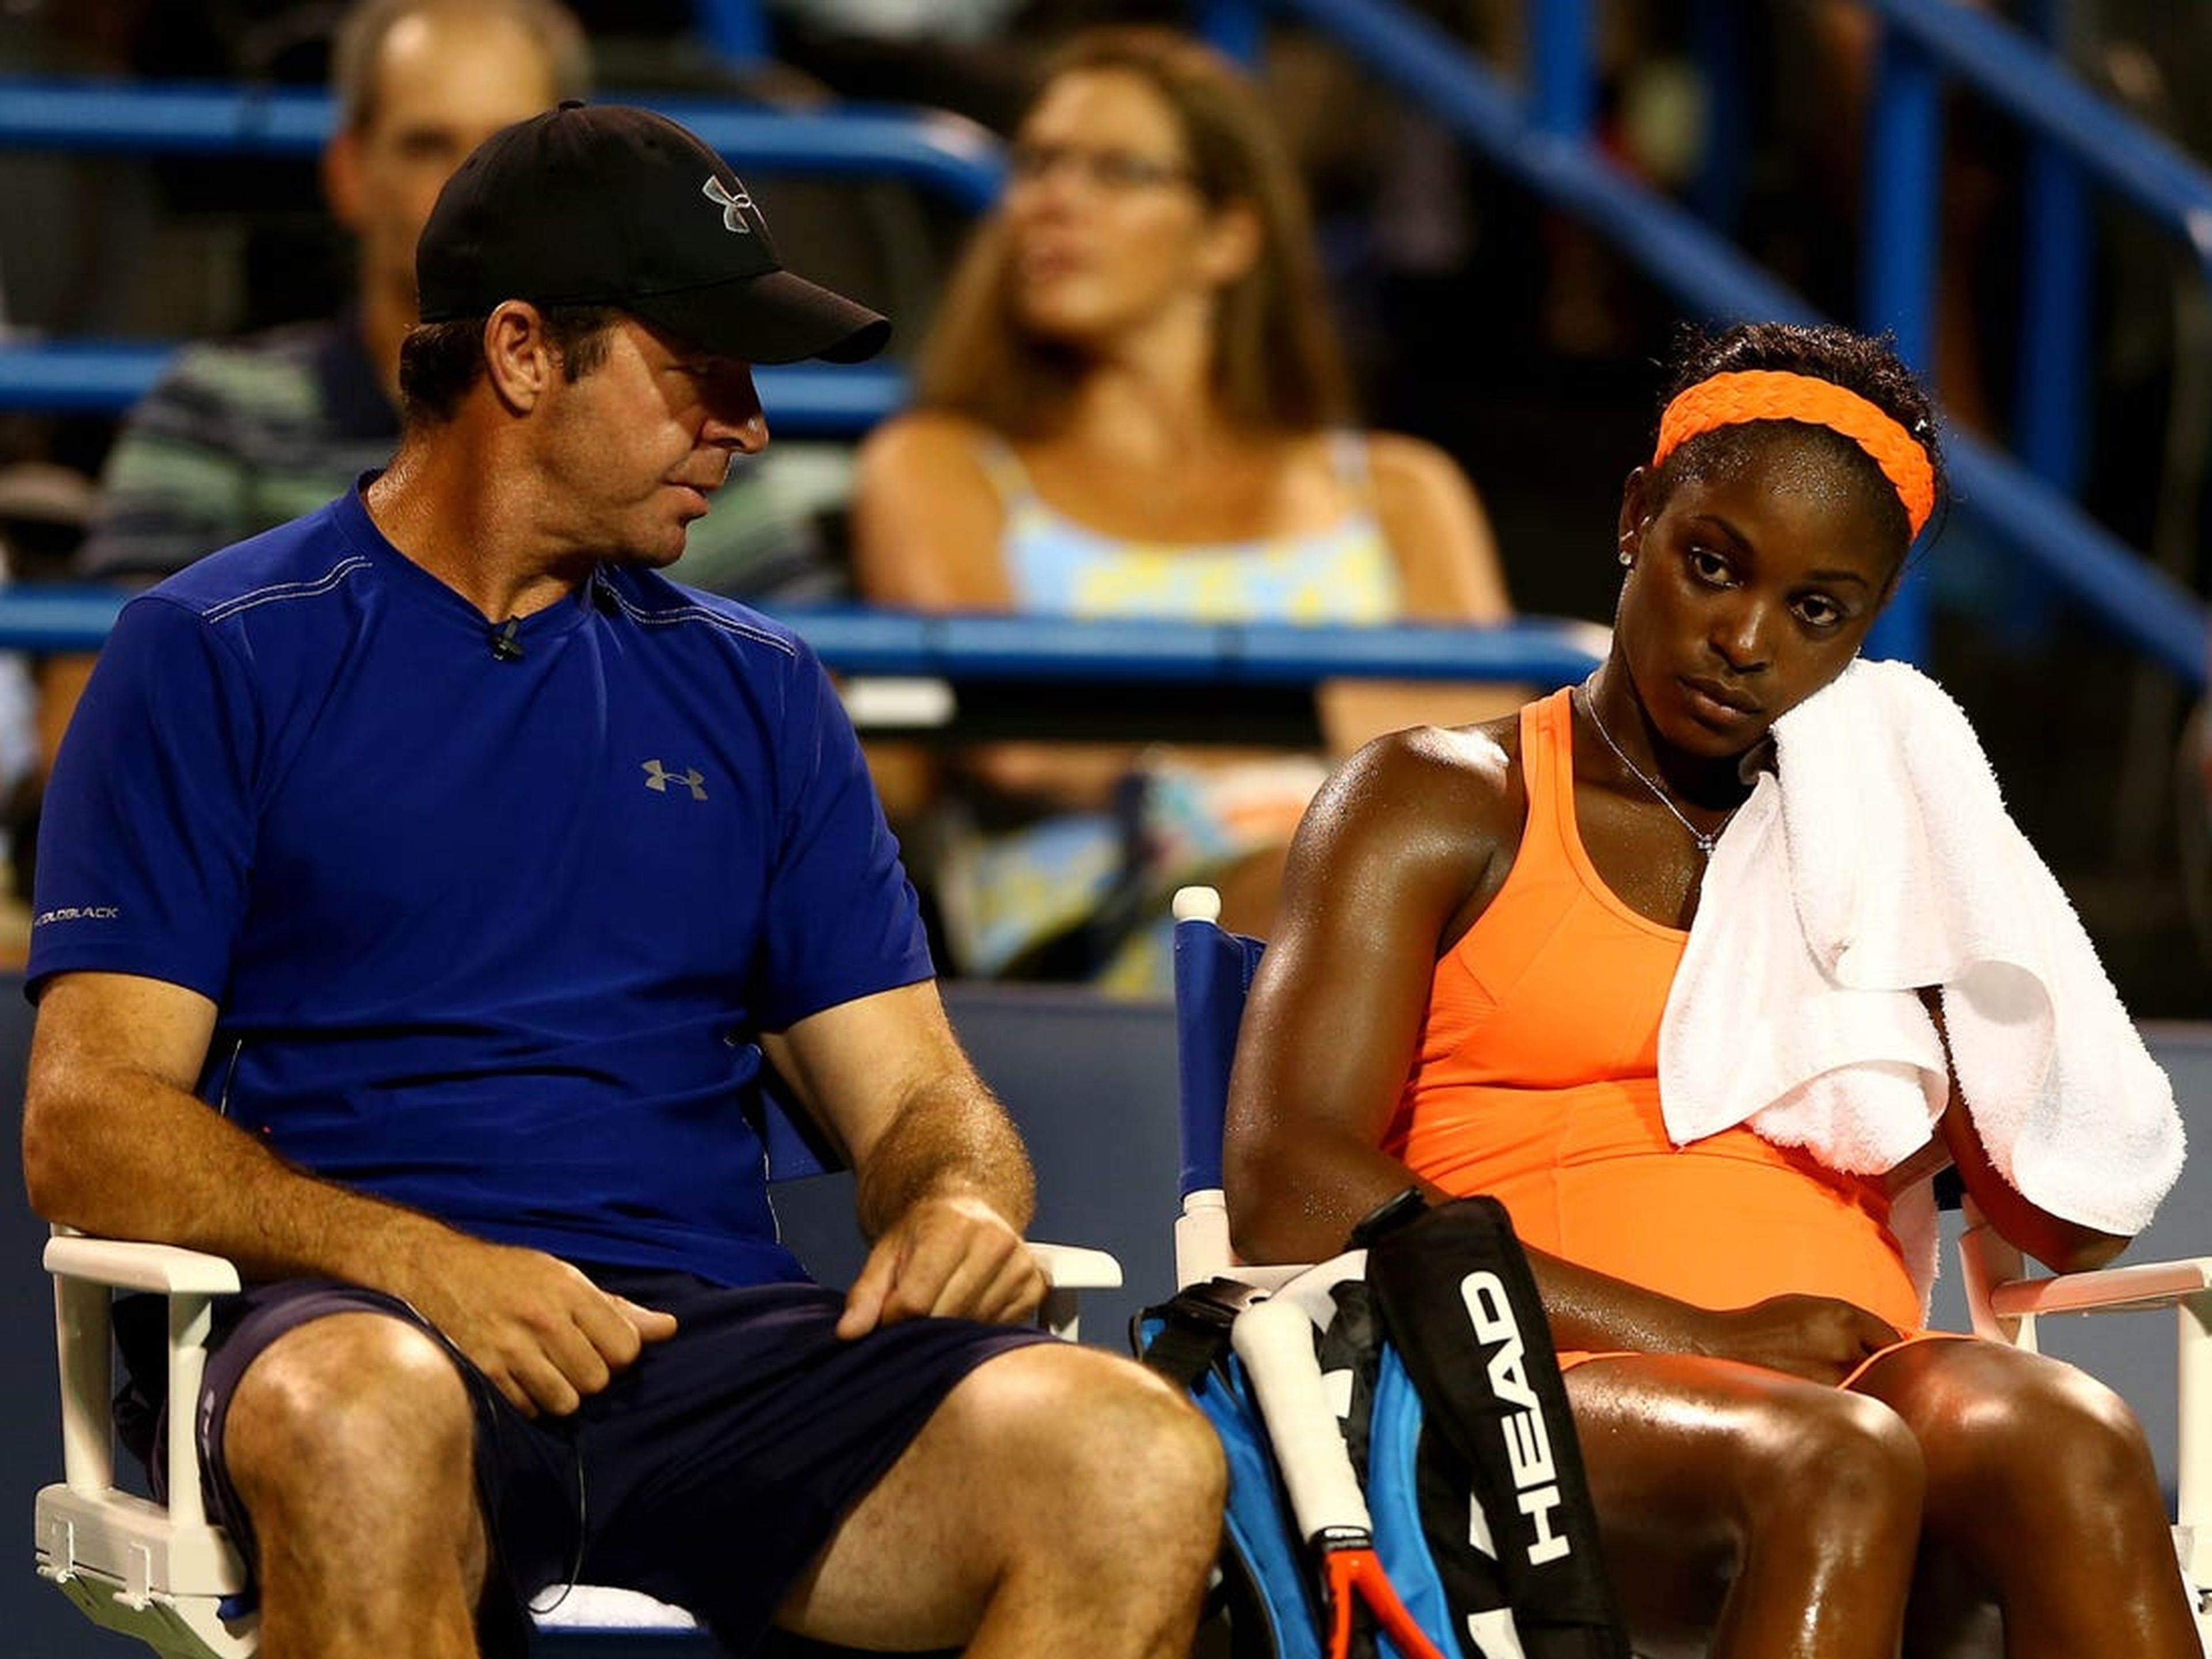 El entrenador Nainkin habla con la tenista Sloane Stephens después de perder un set en 2013.